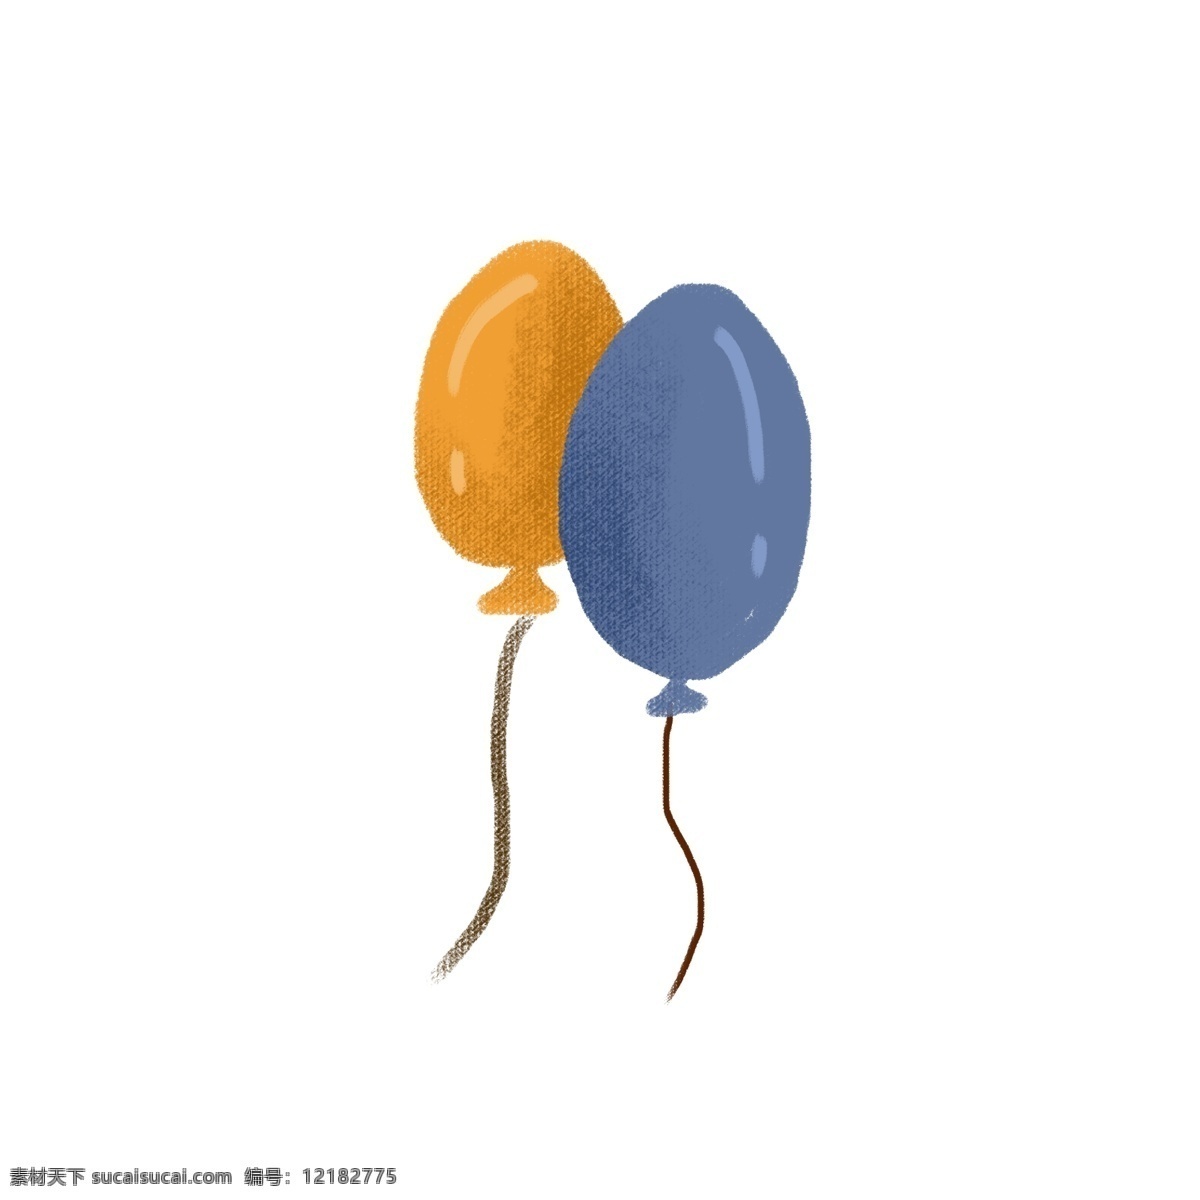 黄 蓝色 气球 卡通 黄色气球 蓝色气球 浮 空中 喜庆气球 彩色气球 手绘气球 卡通气球